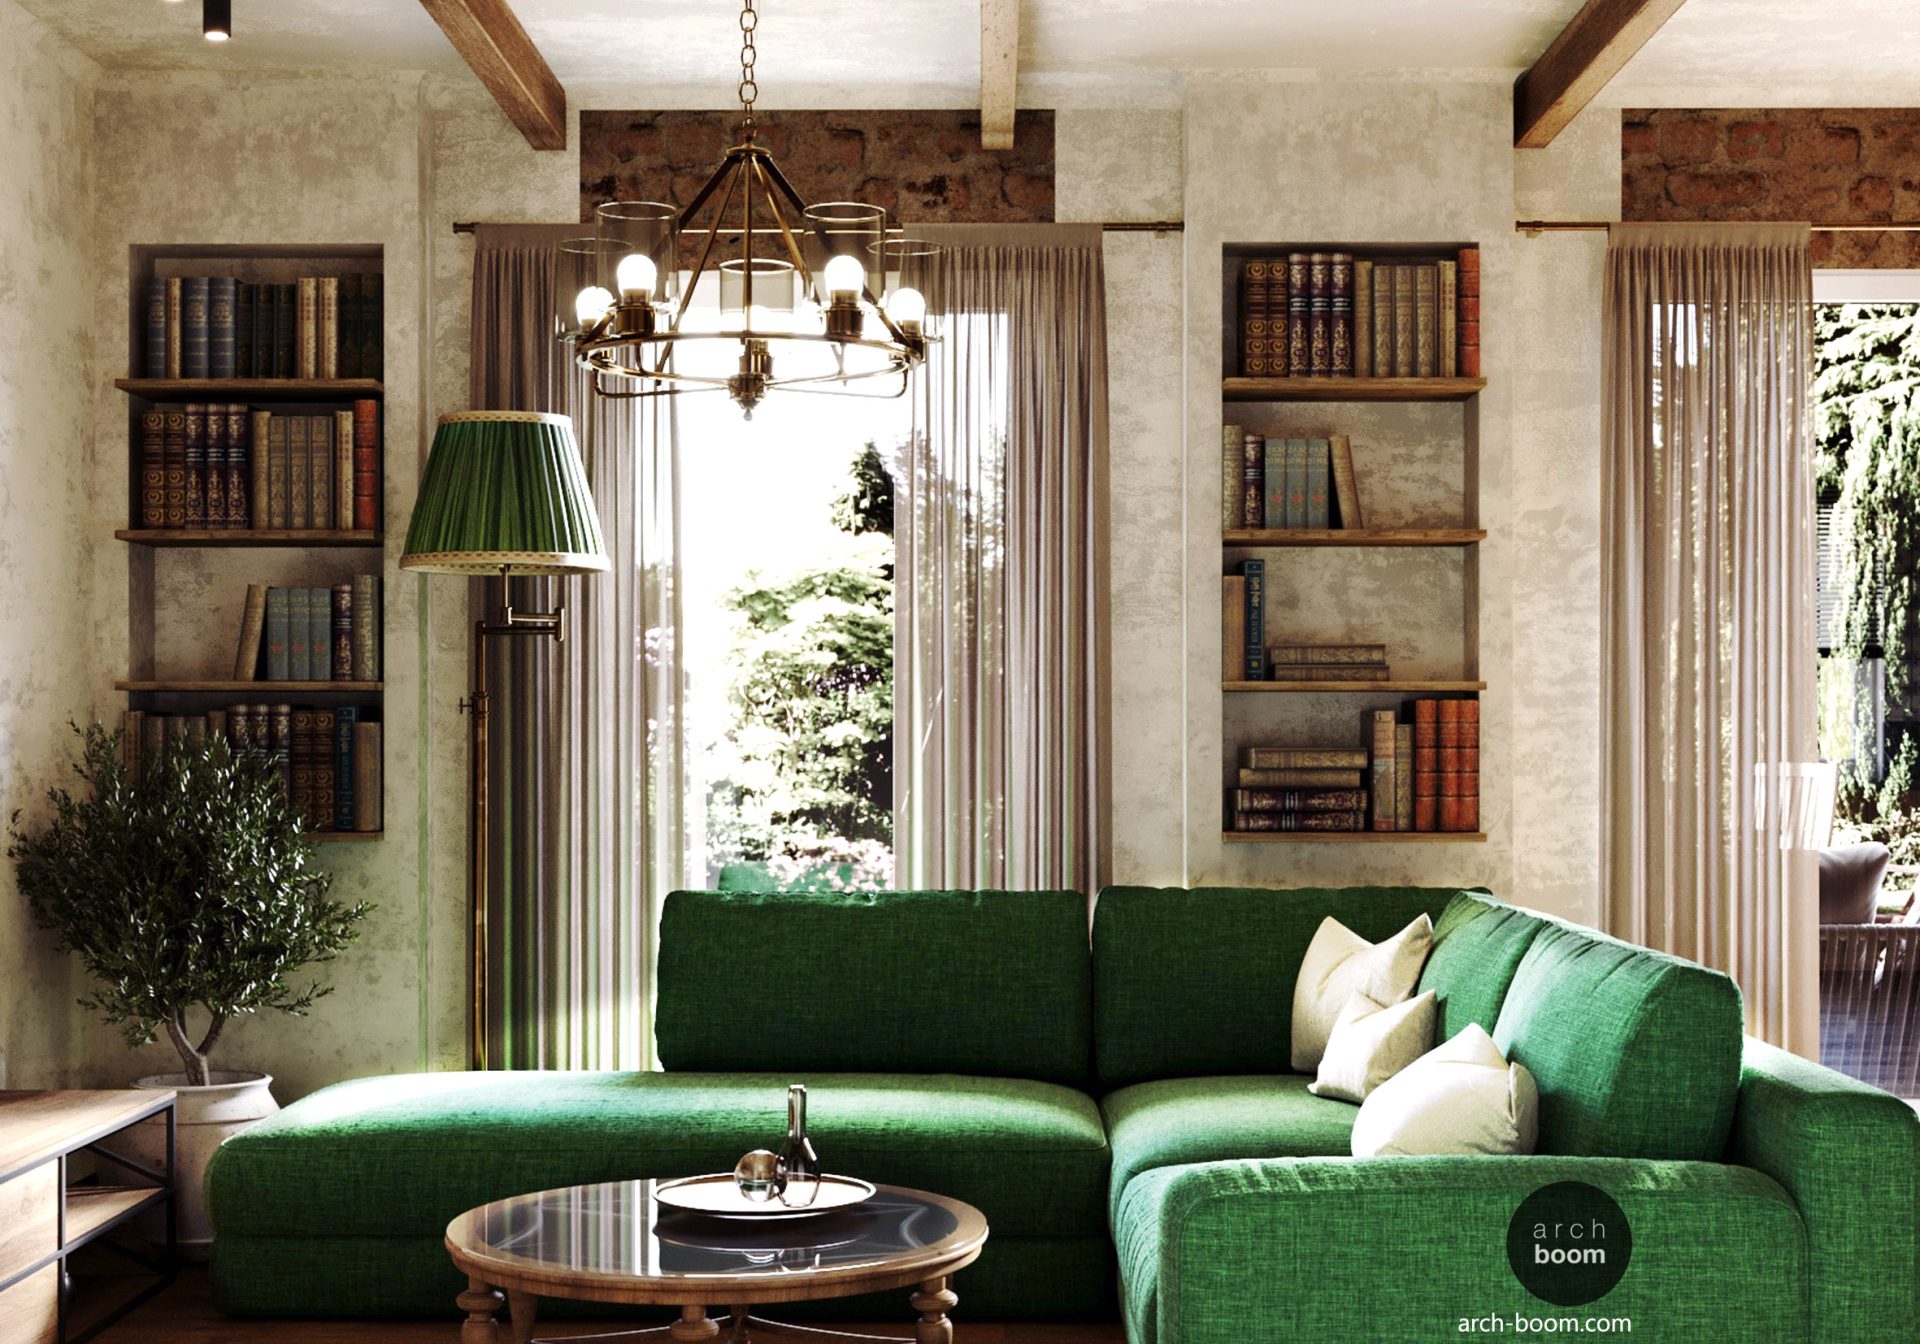 Dom w stylu rustykalnym francuskim z zieloną kanapa